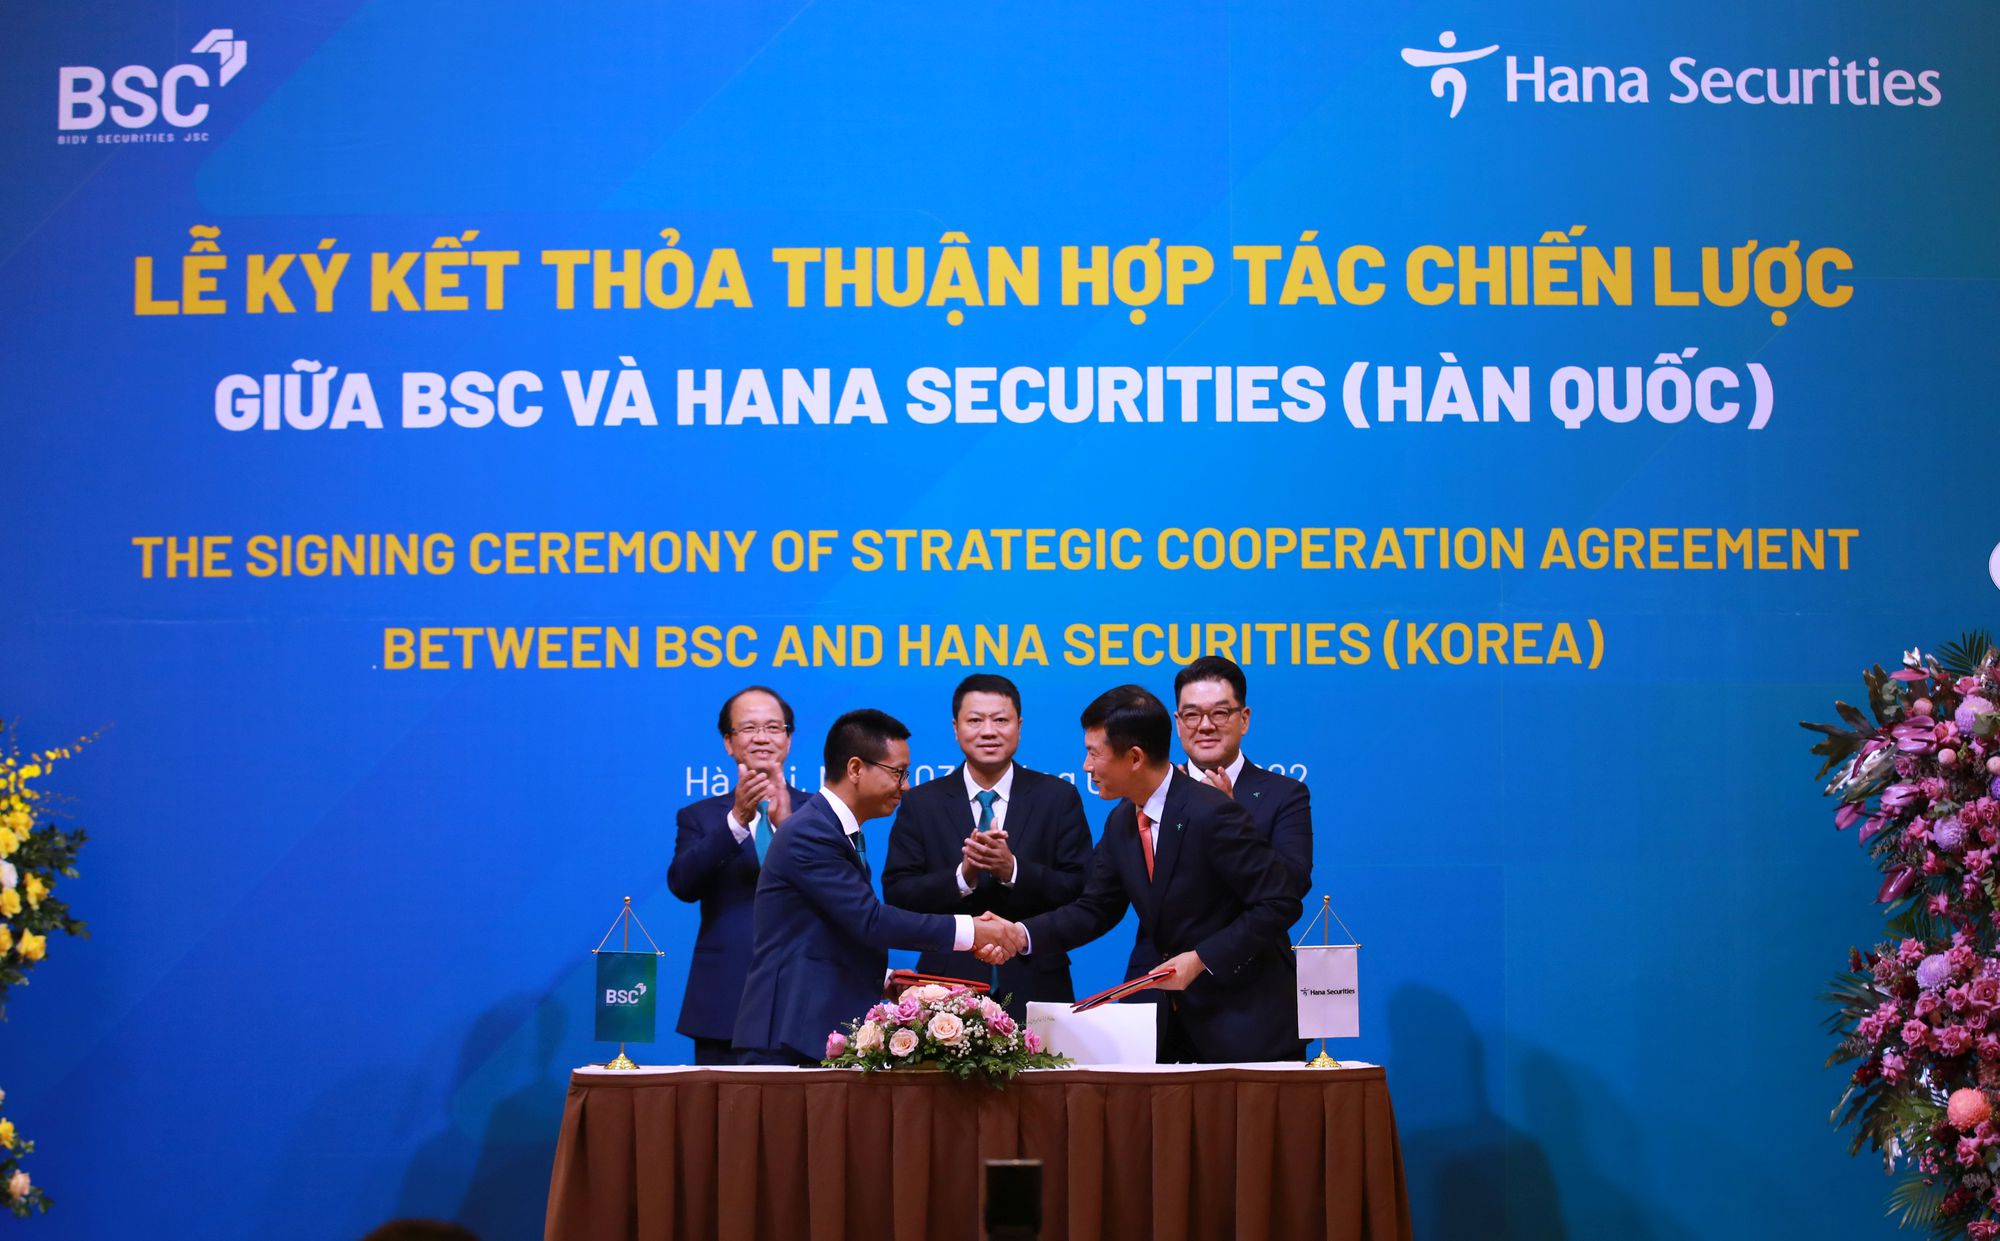 BSC và HSC (Hàn Quốc) ký kết thỏa thuận hợp tác chiến lược - Ảnh 1.